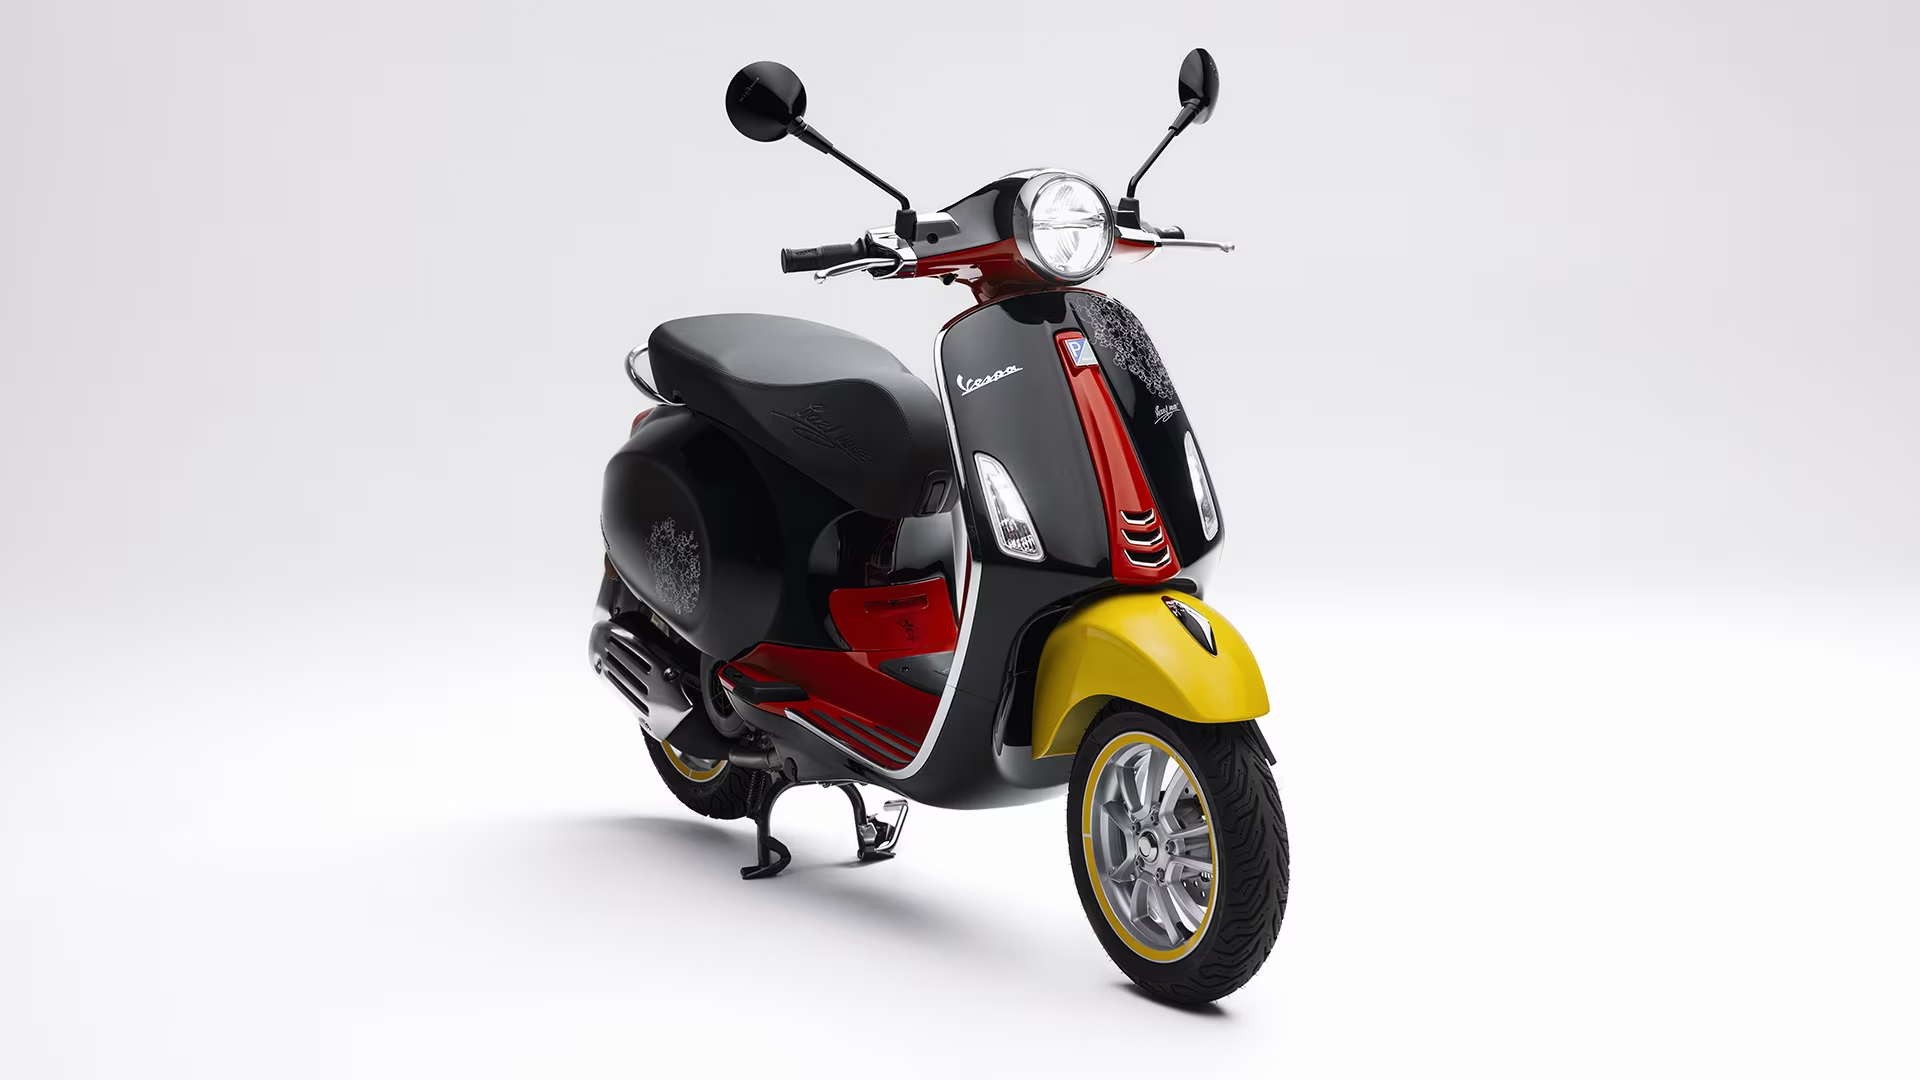 Deux-roues: la moto dans l'aspi du scooter dans l'agglomération  raphaëloise? - Monaco-Matin